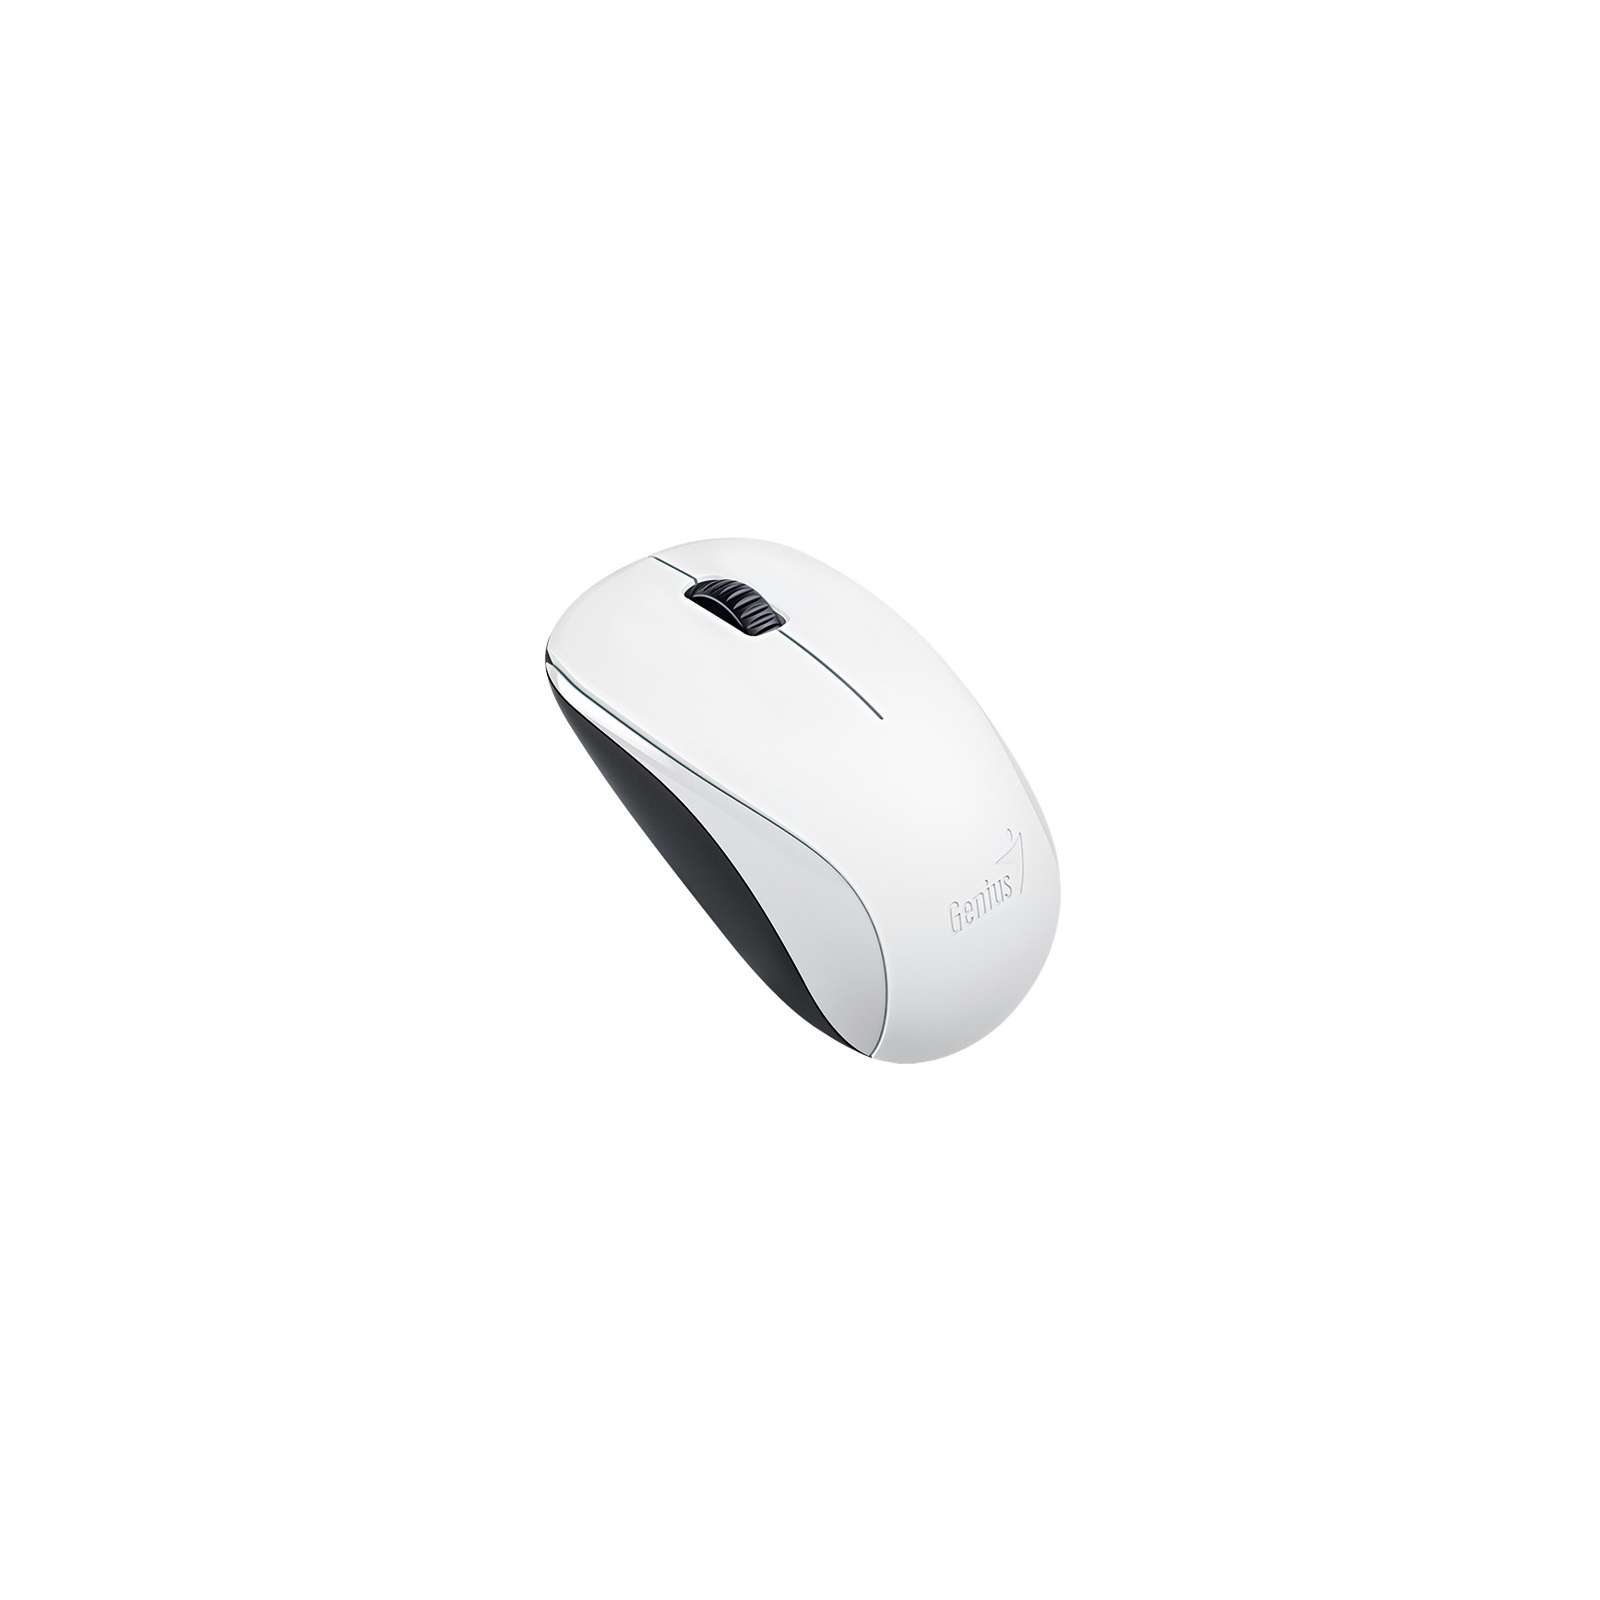 Мишка Genius NX-7000 Wireless White (31030027401)